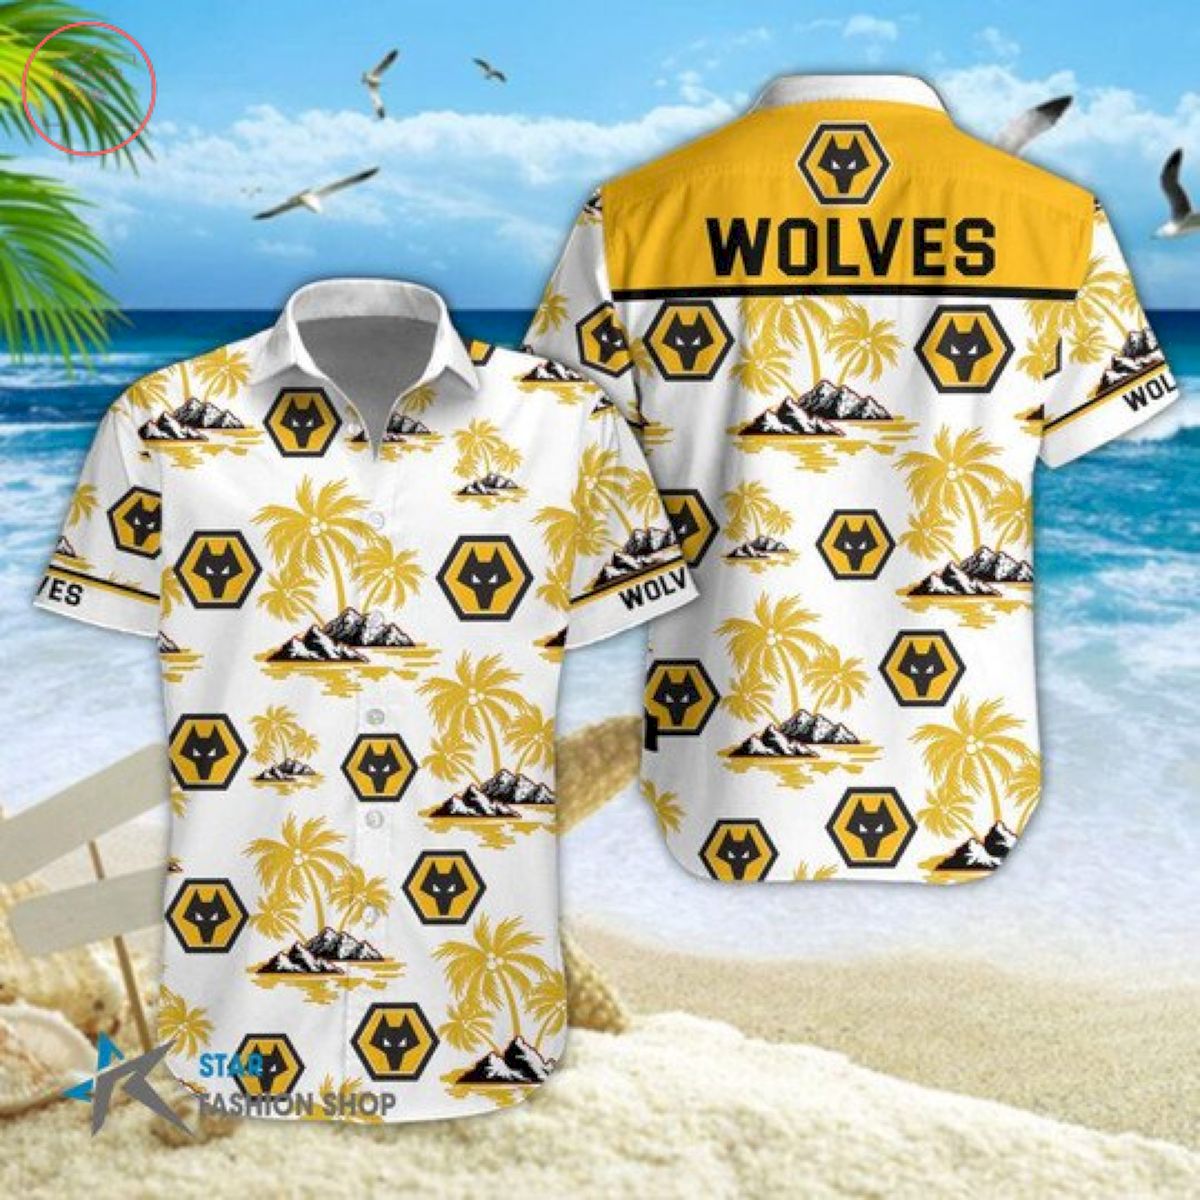 EPL Wolverhampton Wanderers Hawaiian Shirts and Shorts